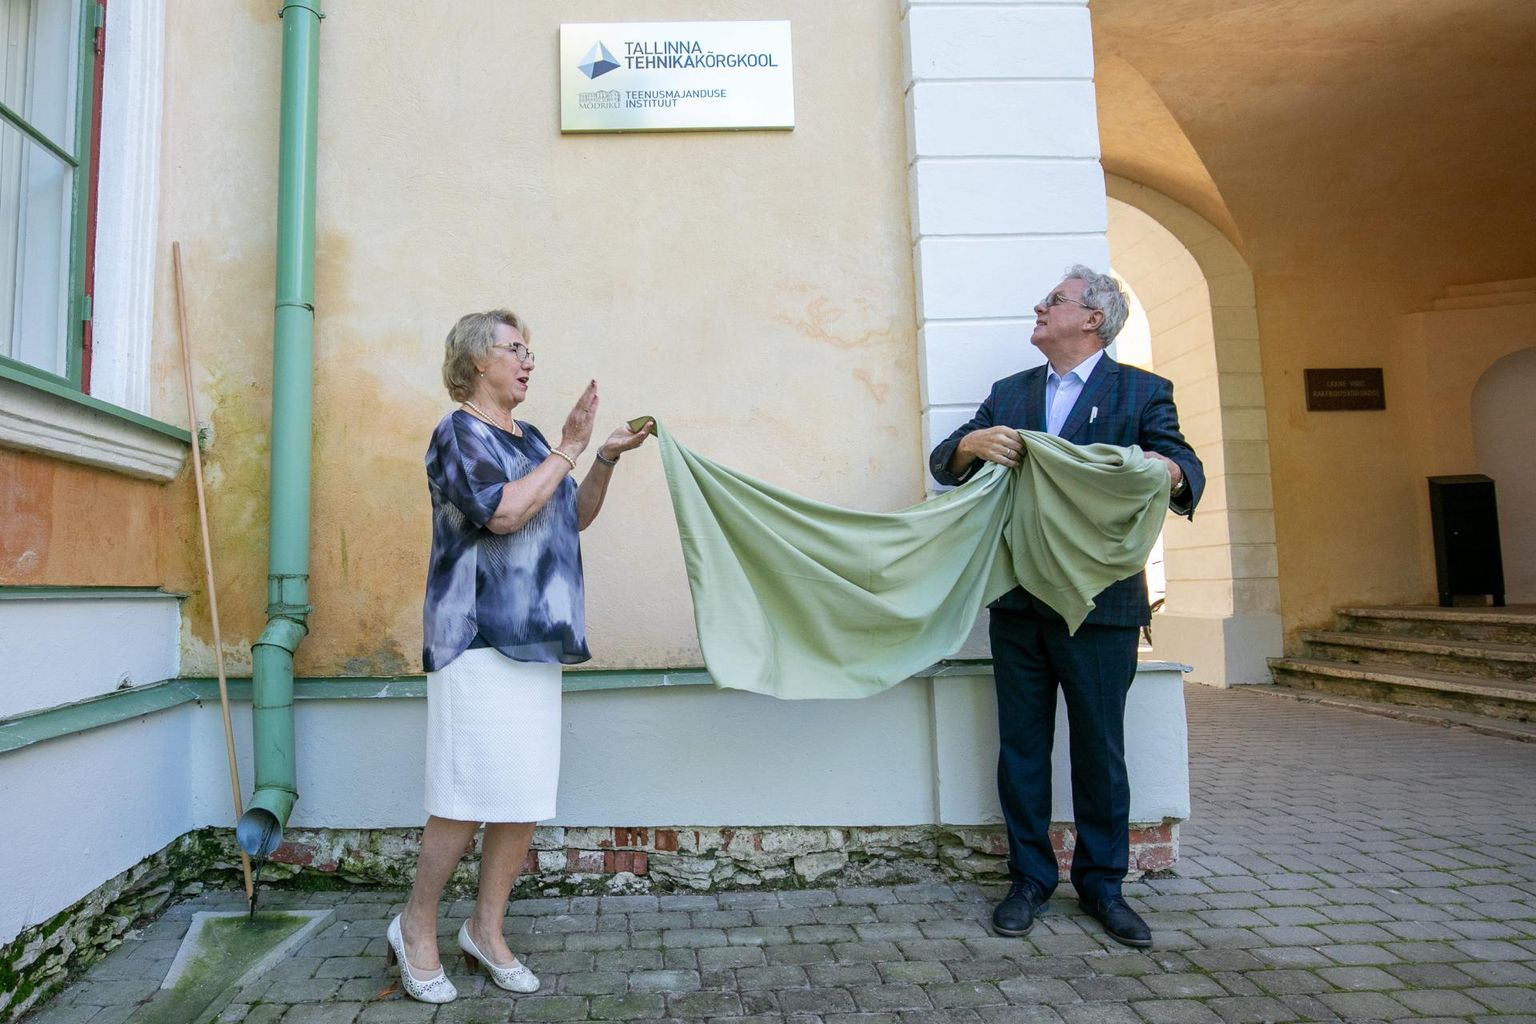 Aasta tagasi augustis avasid Mõdrikul Tallinna tehnikakõrgkooli teenusmajanduse instituudi sildi koolijuht Helle Noorväli ja Tallinna tehnikakõrgkooli rektor Enno Lend.